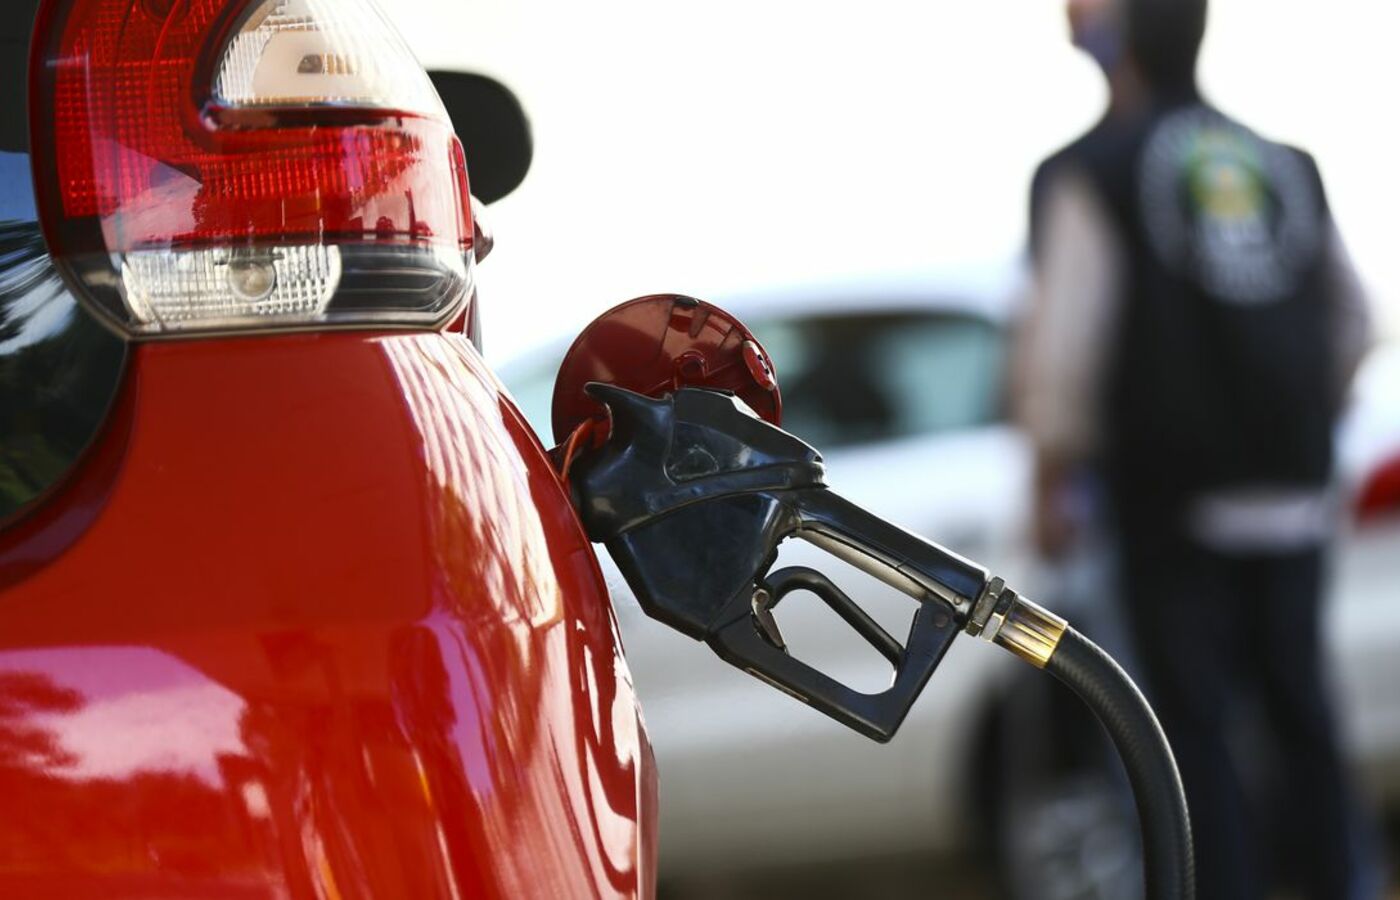 Dentro del Presupuesto Público: ¿Gasolina más cara?  Comprender la recuperación de combustible